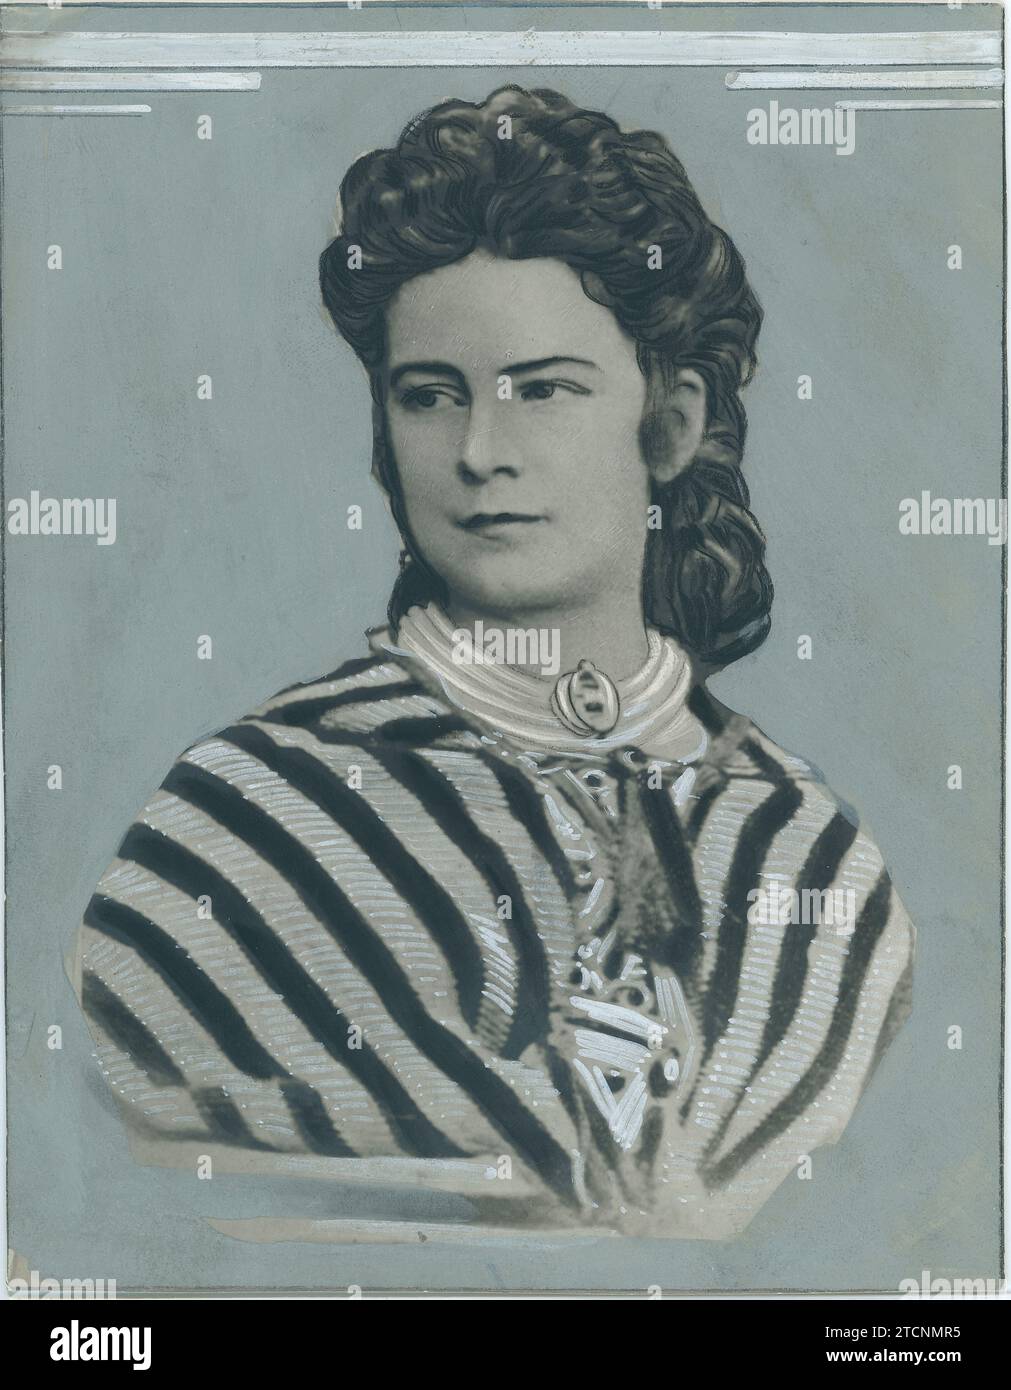 01/01/1870. Kaiserin Elisabeth von Österreich 'Sissi'. Quelle: Album/Archivo ABC Stockfoto